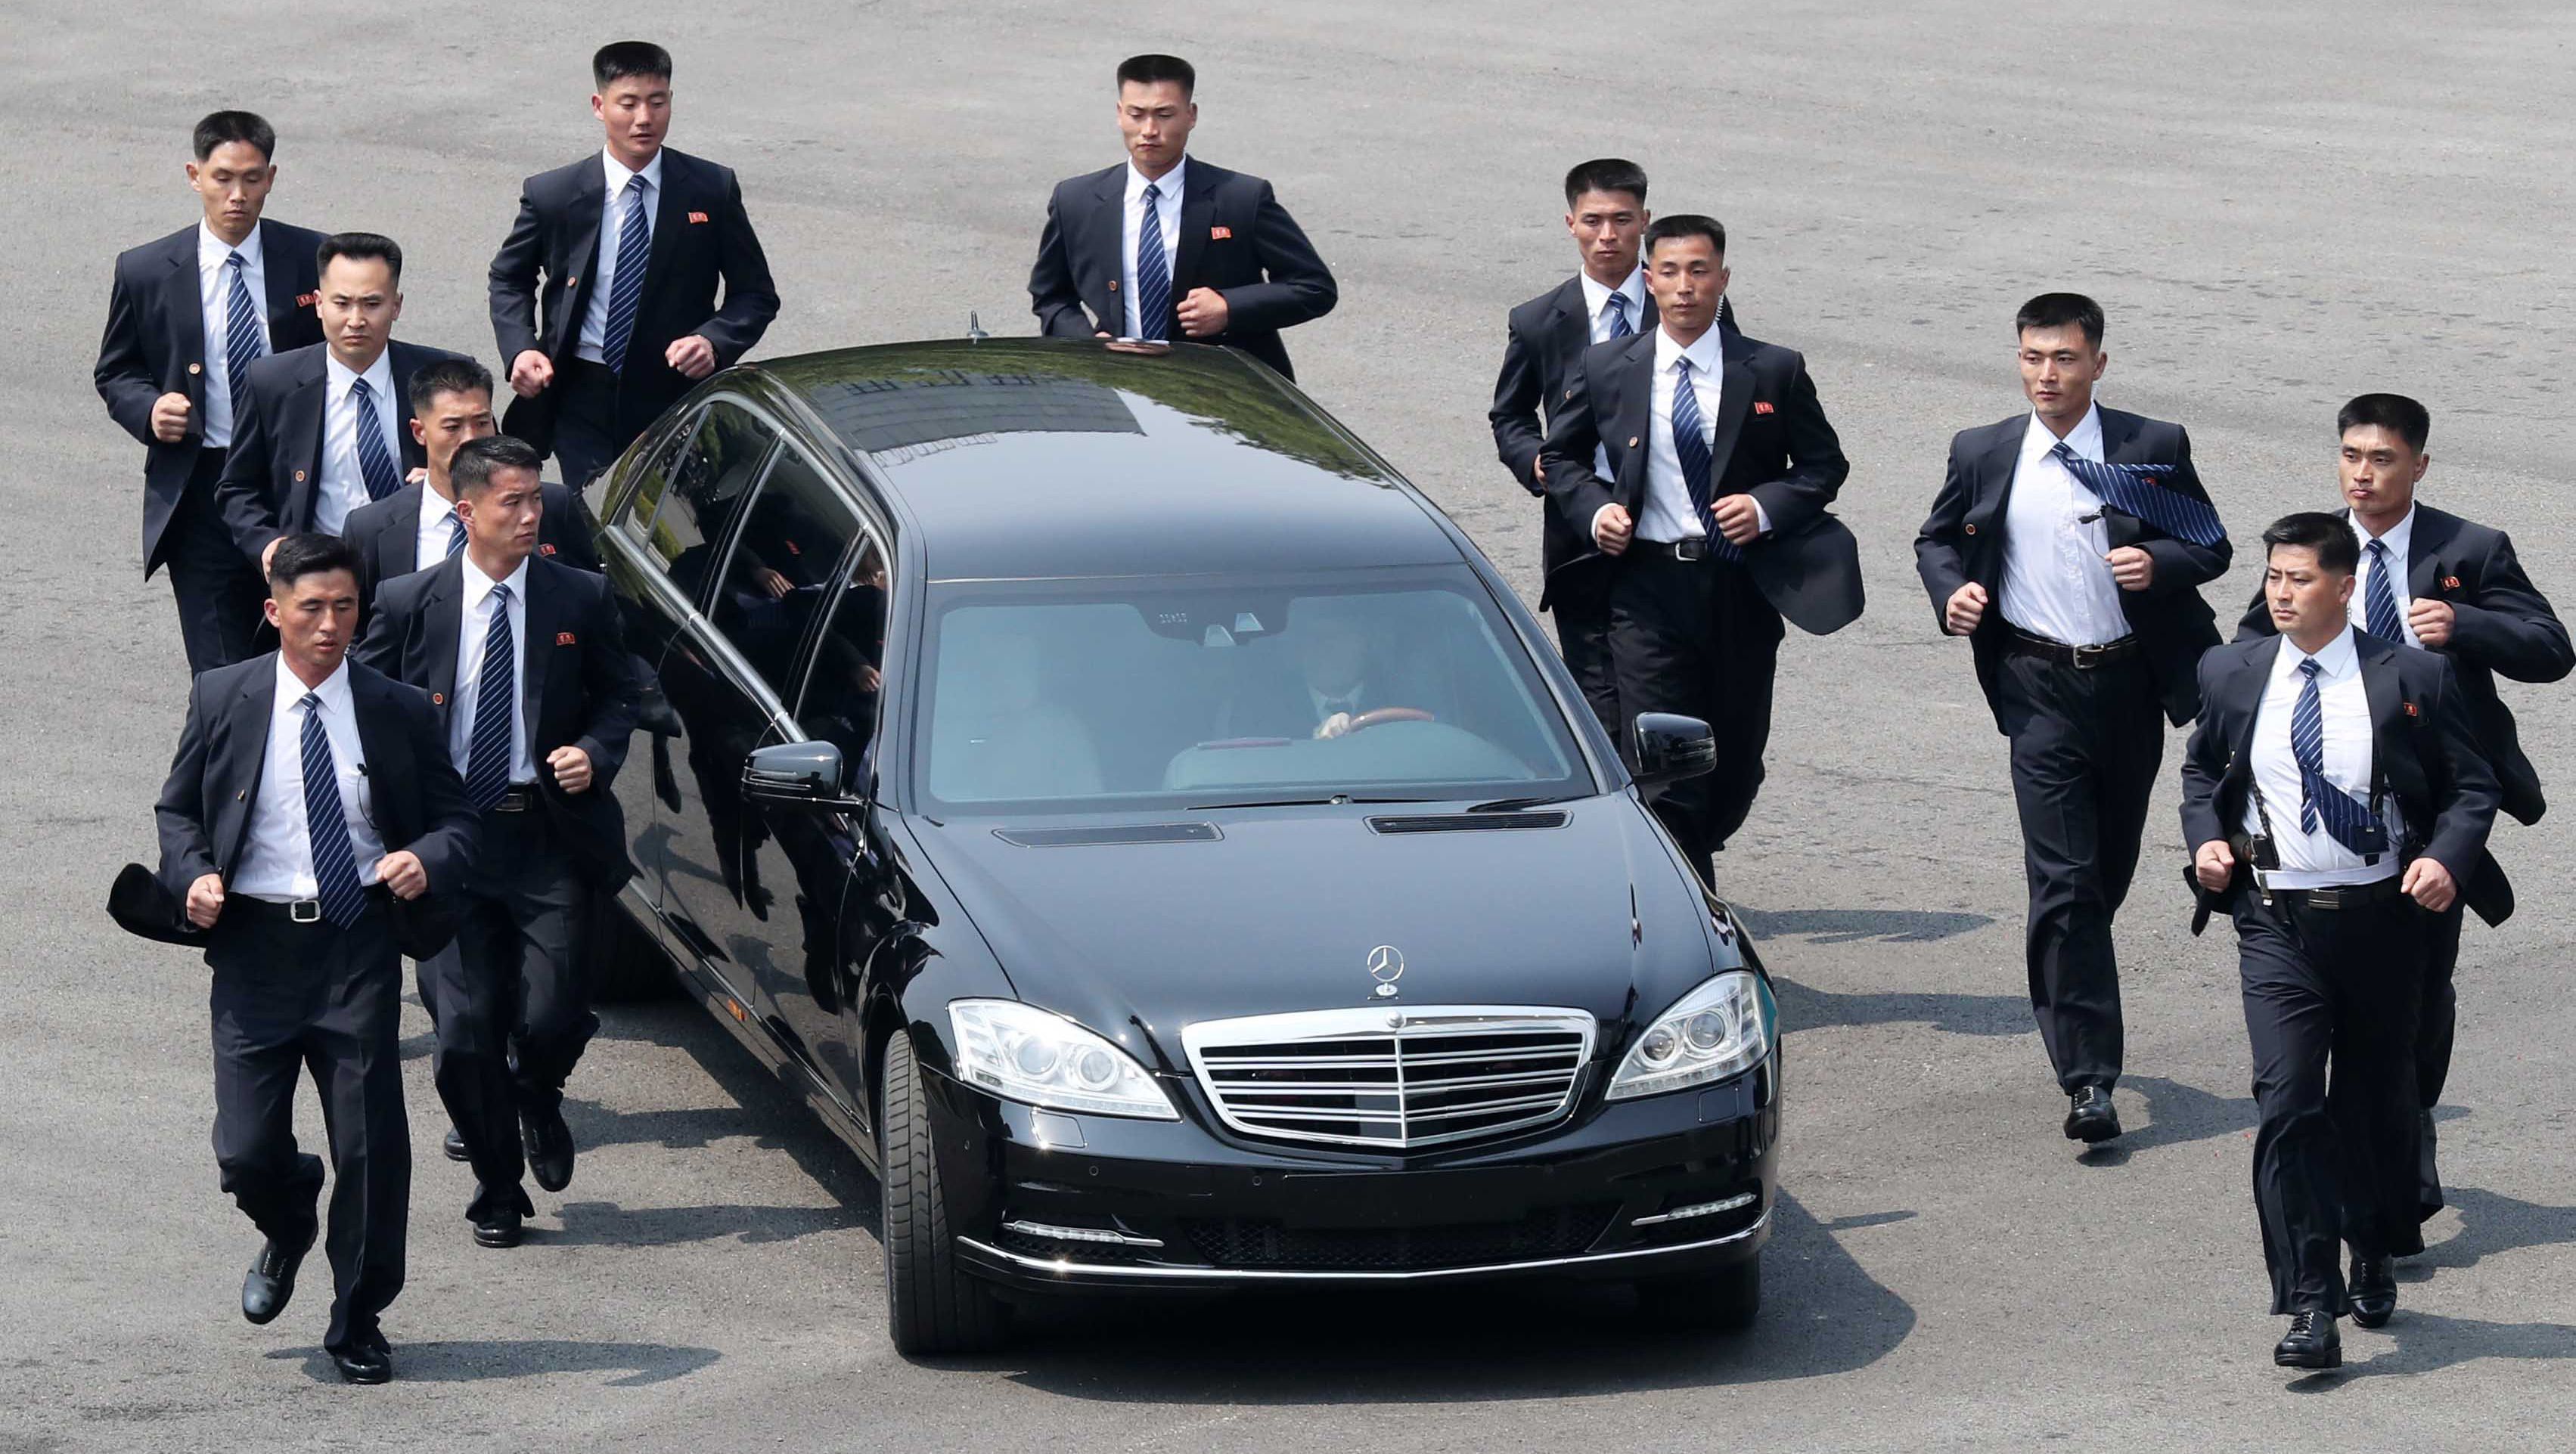 سر امتلاك زعيم كوريا الشمالية سيارات مرسيدس بولمان المحظورة على بلاده 5